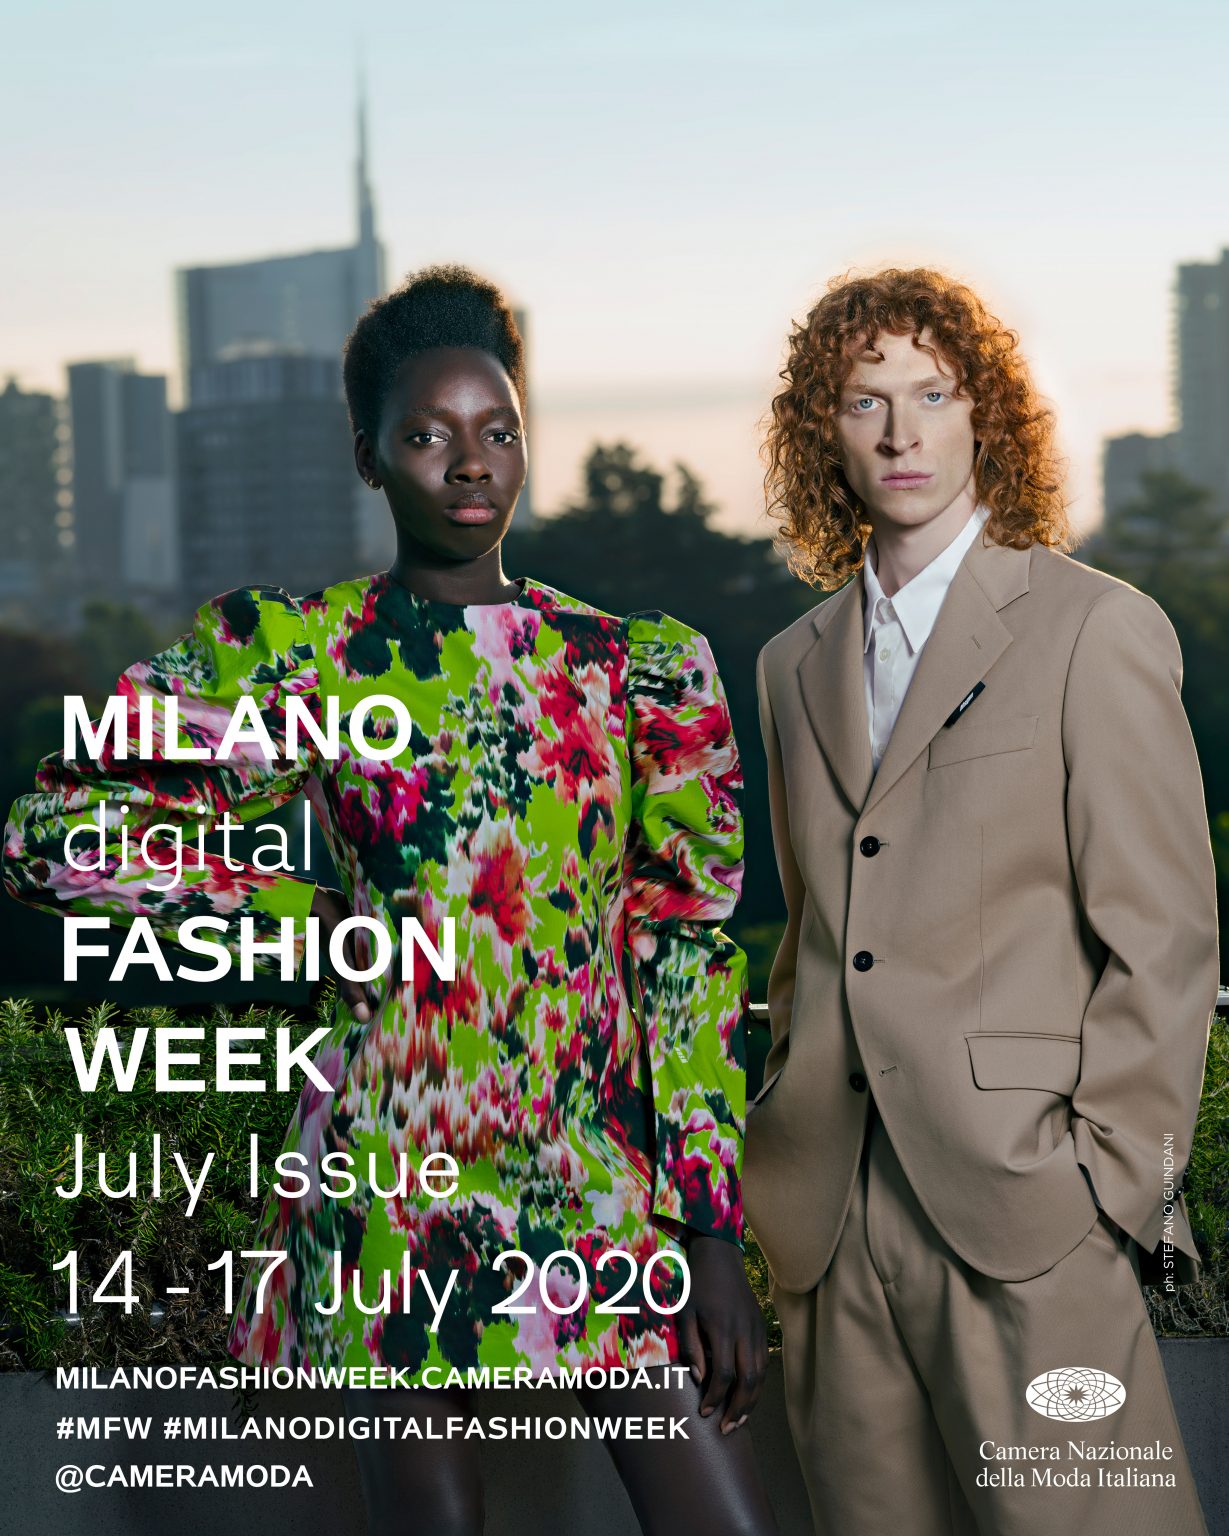 Milan Digital Fashion Week, July 14-17, 2020 | Event Calendar